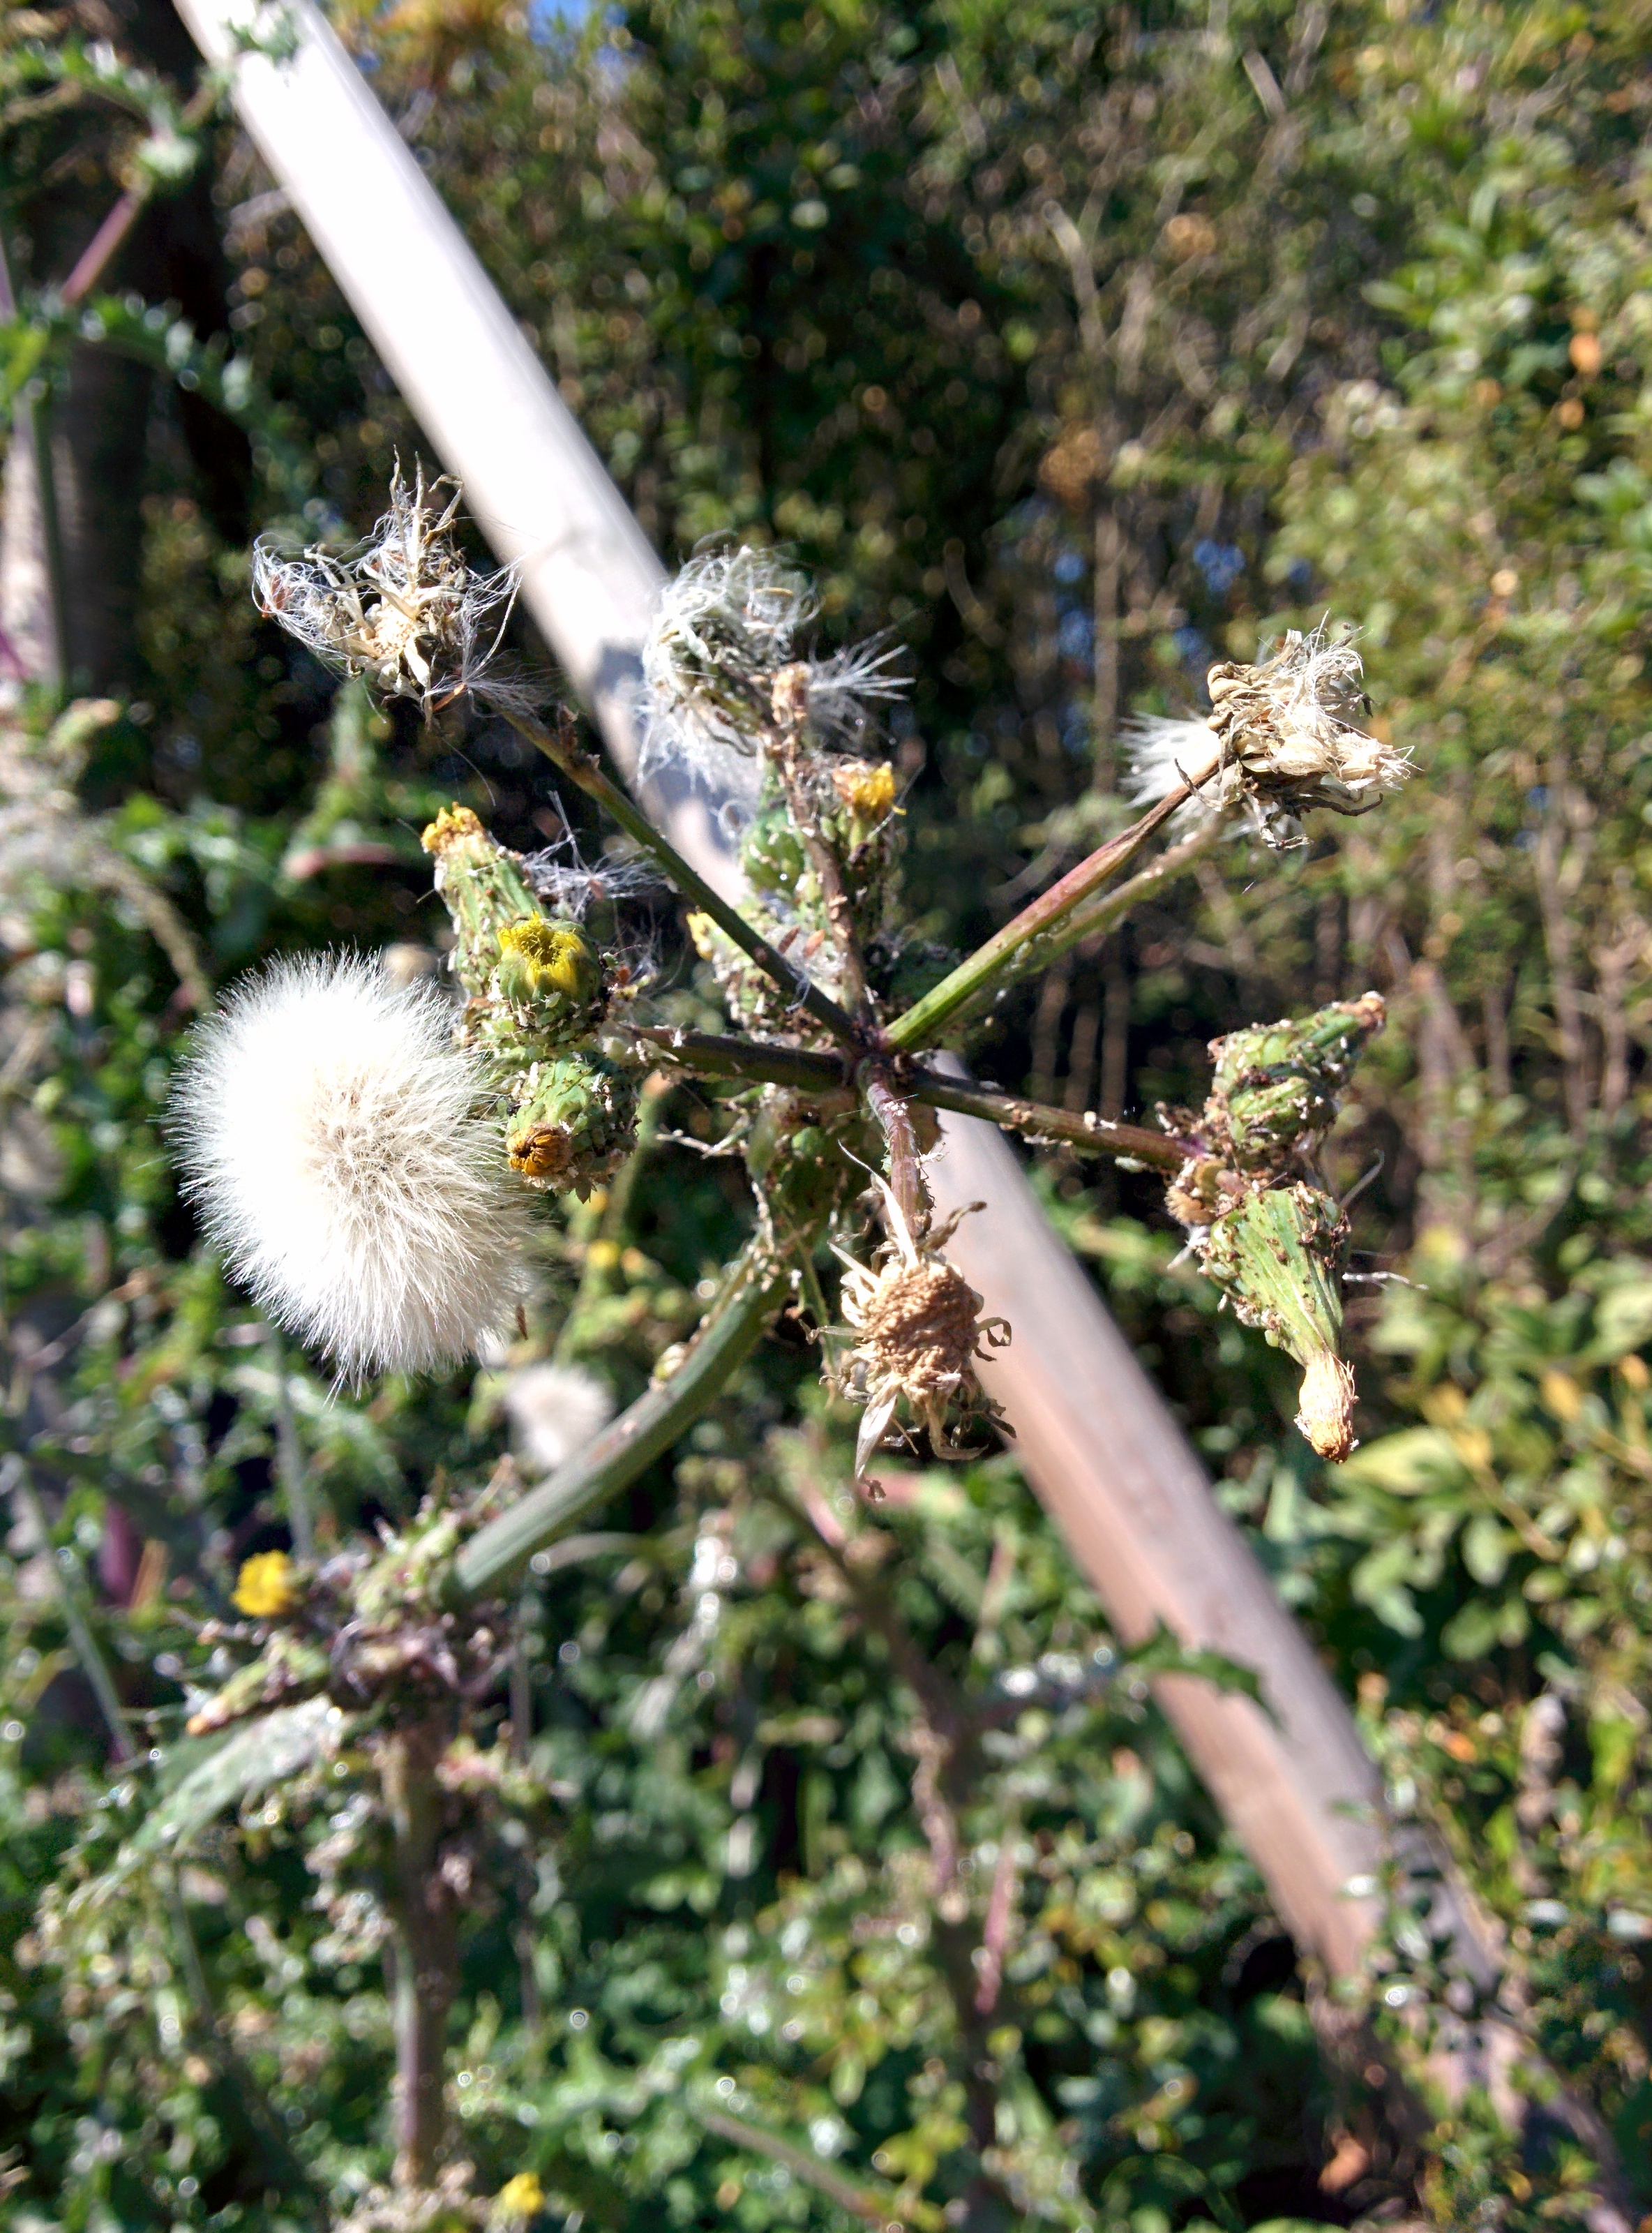 IMG_20151026_122150.jpg 흰색, 초록색 진딧물 잔뜩 자라는 방가지똥 열매... 솜털씨앗 대량 생산중.